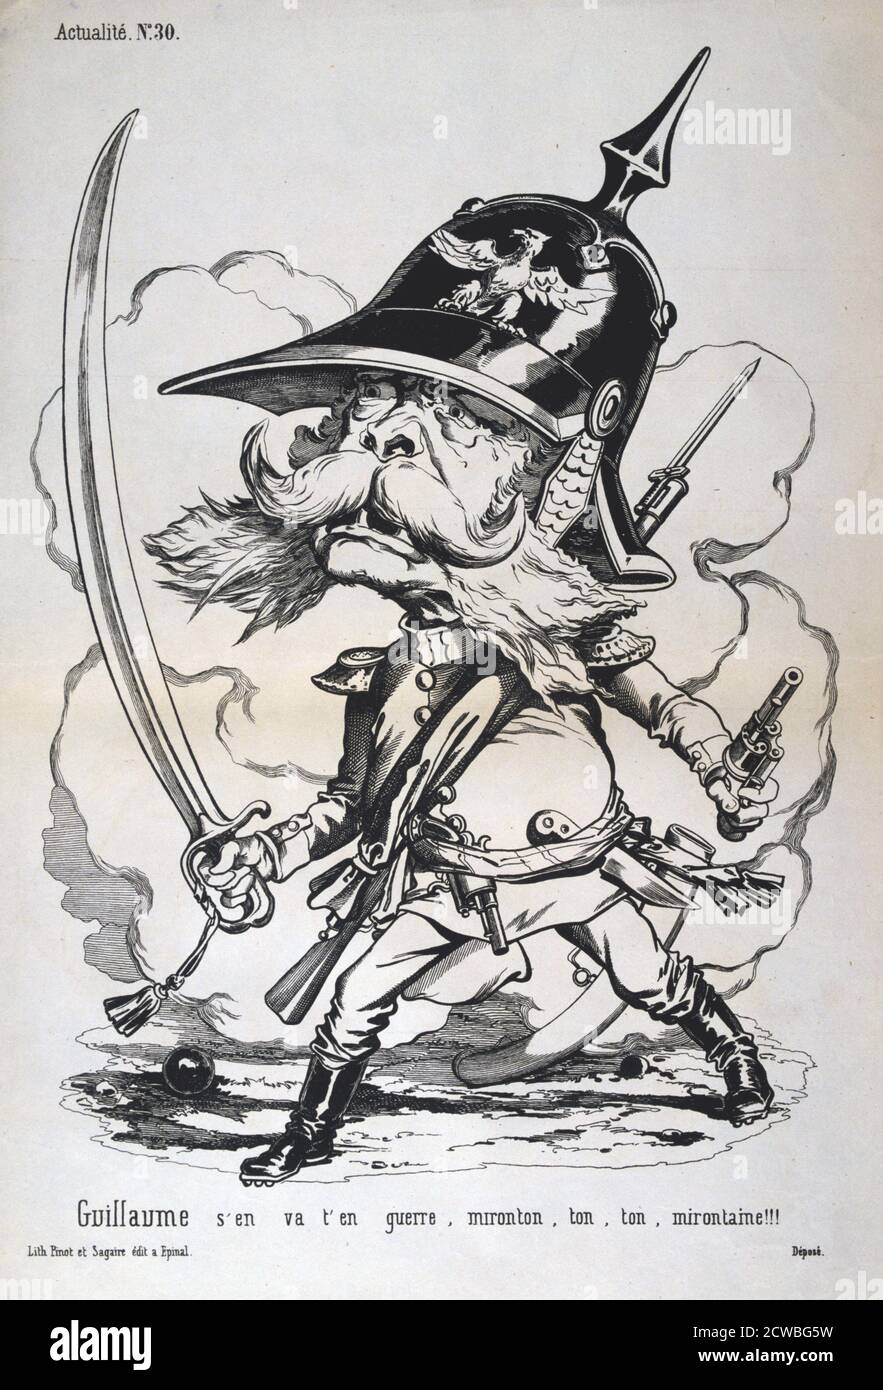 La caricatura di Guglielmo I di Prussia, guerra franco-prussiana, 1870-1871. Da una collezione privata. Foto Stock